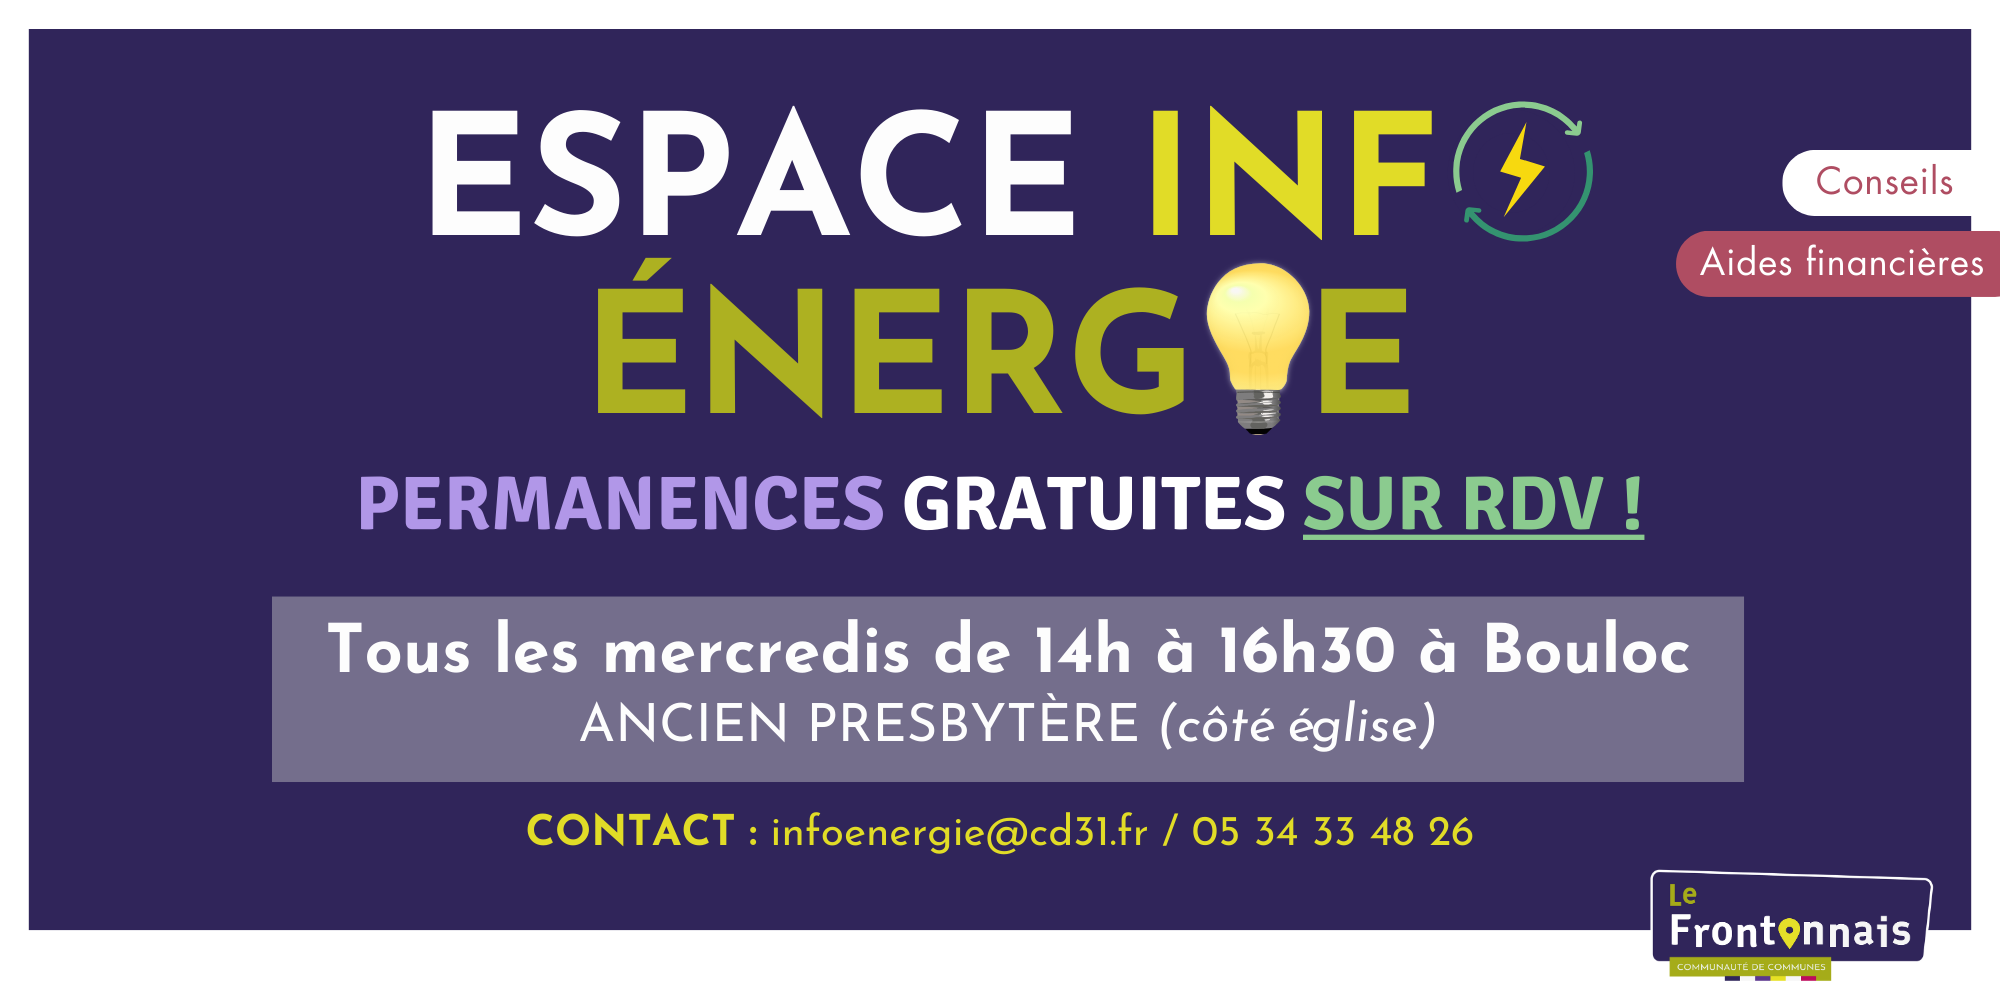 Le Conseil Départemental de la Haute-Garonne a mis en place un Espace Info Energie (EIE) dans le Frontonnais.<br />
Les services de l’EIE sont gratuits et accessibles à tous administré ayant un projet de construction, de rénovation, d’équipement d’énergie renouvelable ou d’adaptation de logement au handicap. Sébastien GIMENEZ assure cette permanence sur RDV tous les mercredis après-midi de 14h à 16h30 à Bouloc, salle des associations (en face de la Mairie).<br />
sebastien.gimenez@cd31.fr / 06.17.16.42.71